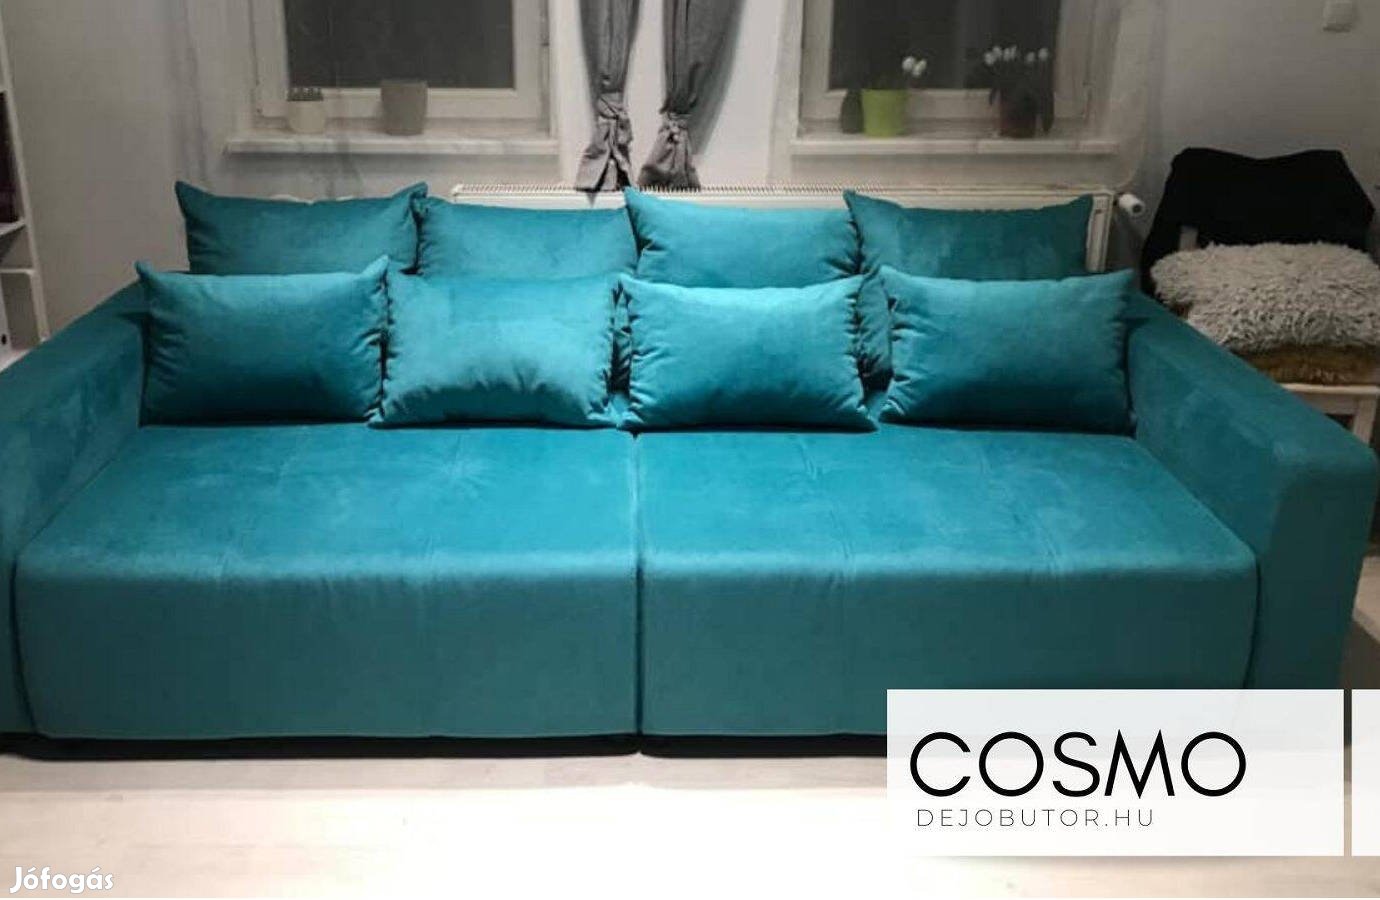 Cosmo óriás kék szvacsos bútor kanapé ülőgarnitúra 290x140 cm